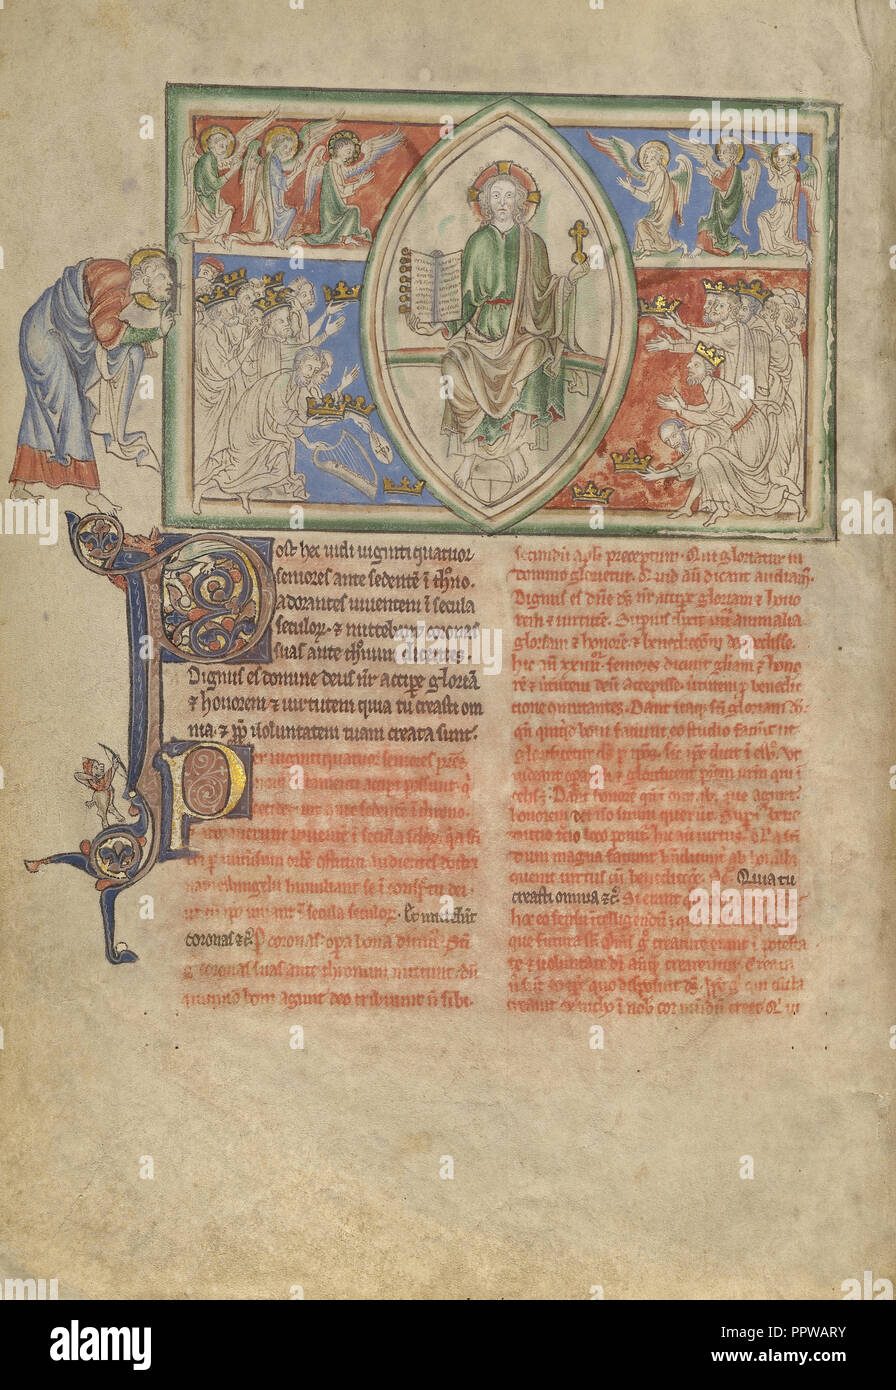 Les Vingt-quatre vieillards rendent hommage au trône de Dieu ; Londres, Angleterre, probablement ; environ 1255 - 1260 ; couleurs Tempera, feuille d'or Banque D'Images